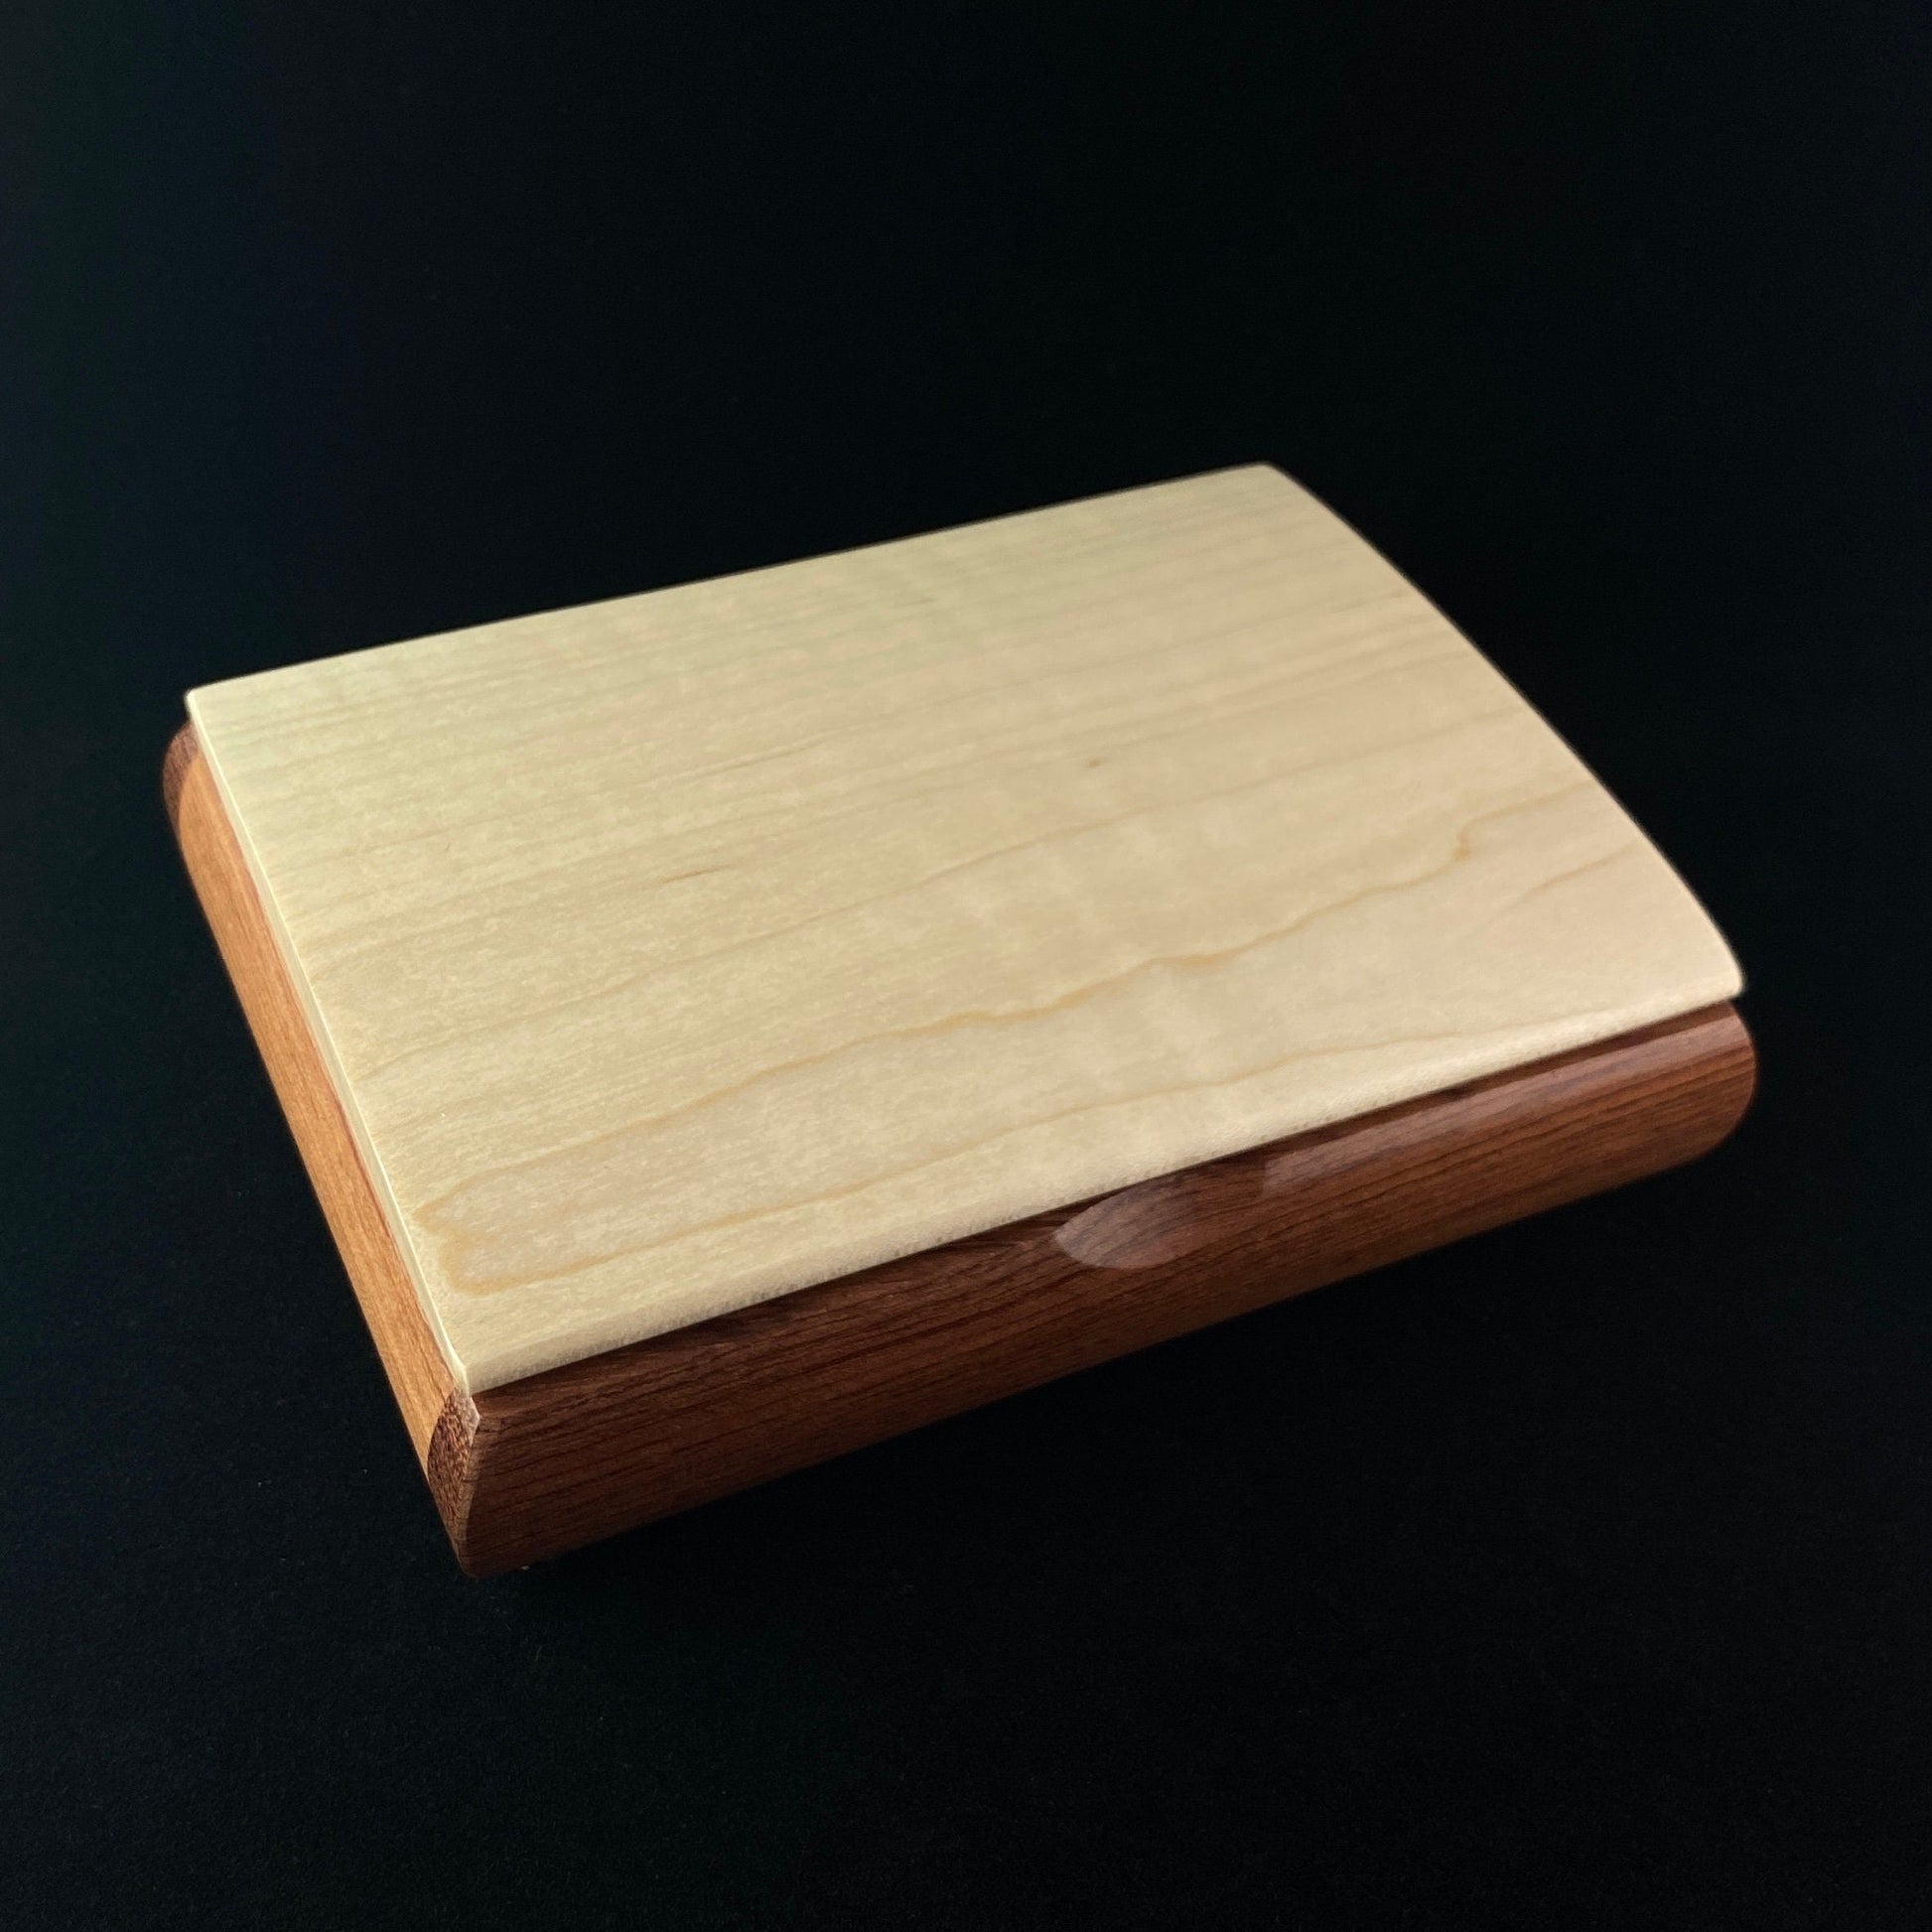 Handmade Wooden Jewelry Box - Curly Maple and Bubinga